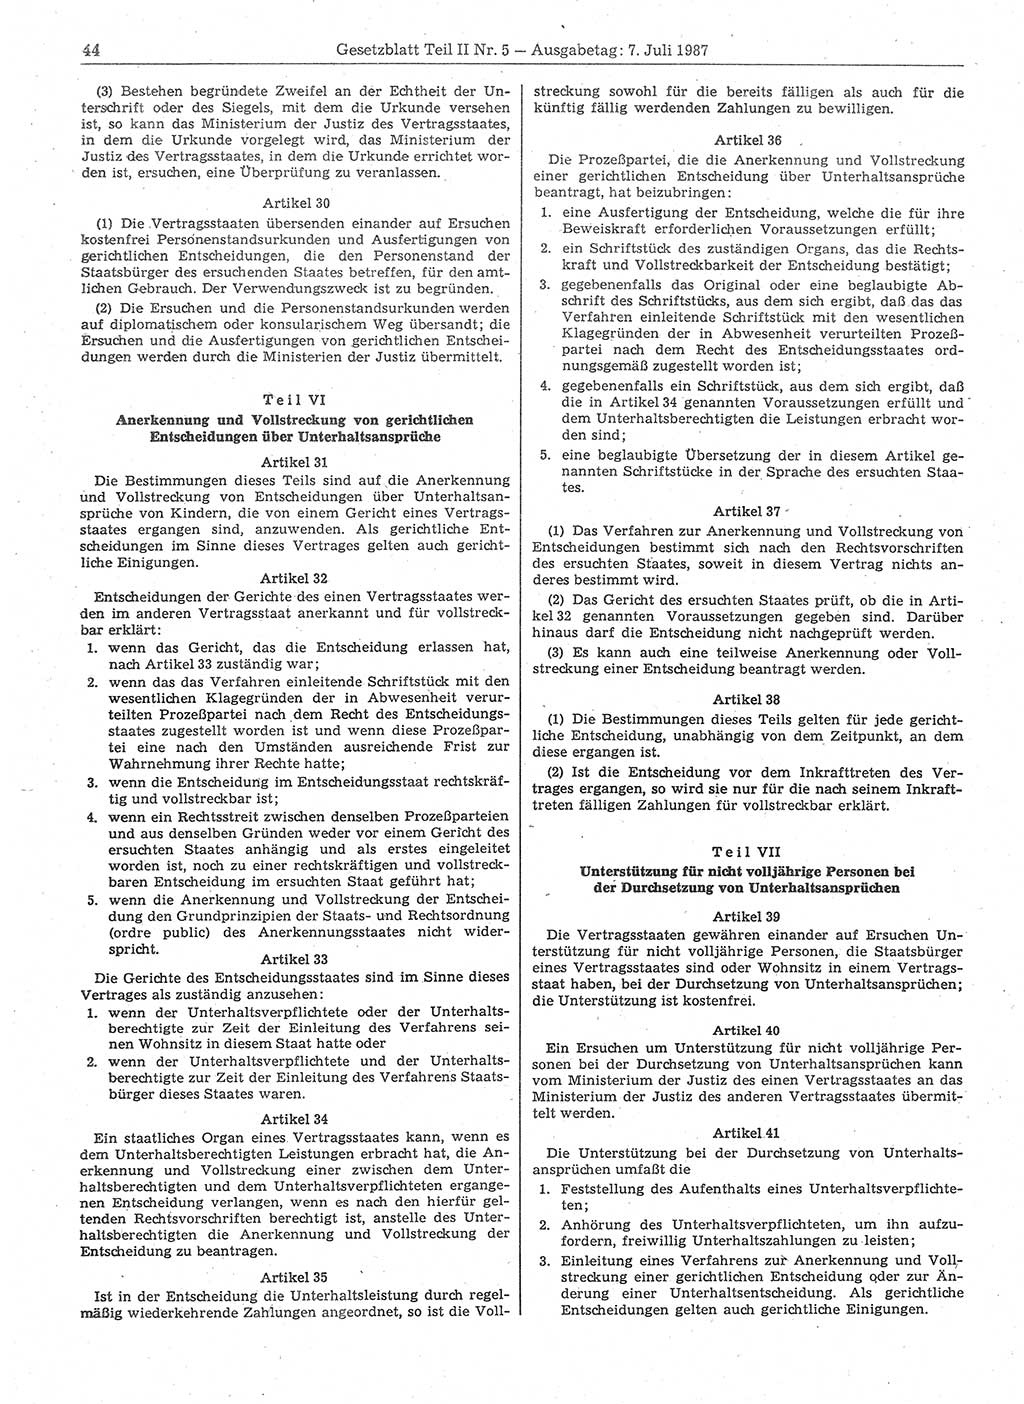 Gesetzblatt (GBl.) der Deutschen Demokratischen Republik (DDR) Teil ⅠⅠ 1987, Seite 44 (GBl. DDR ⅠⅠ 1987, S. 44)